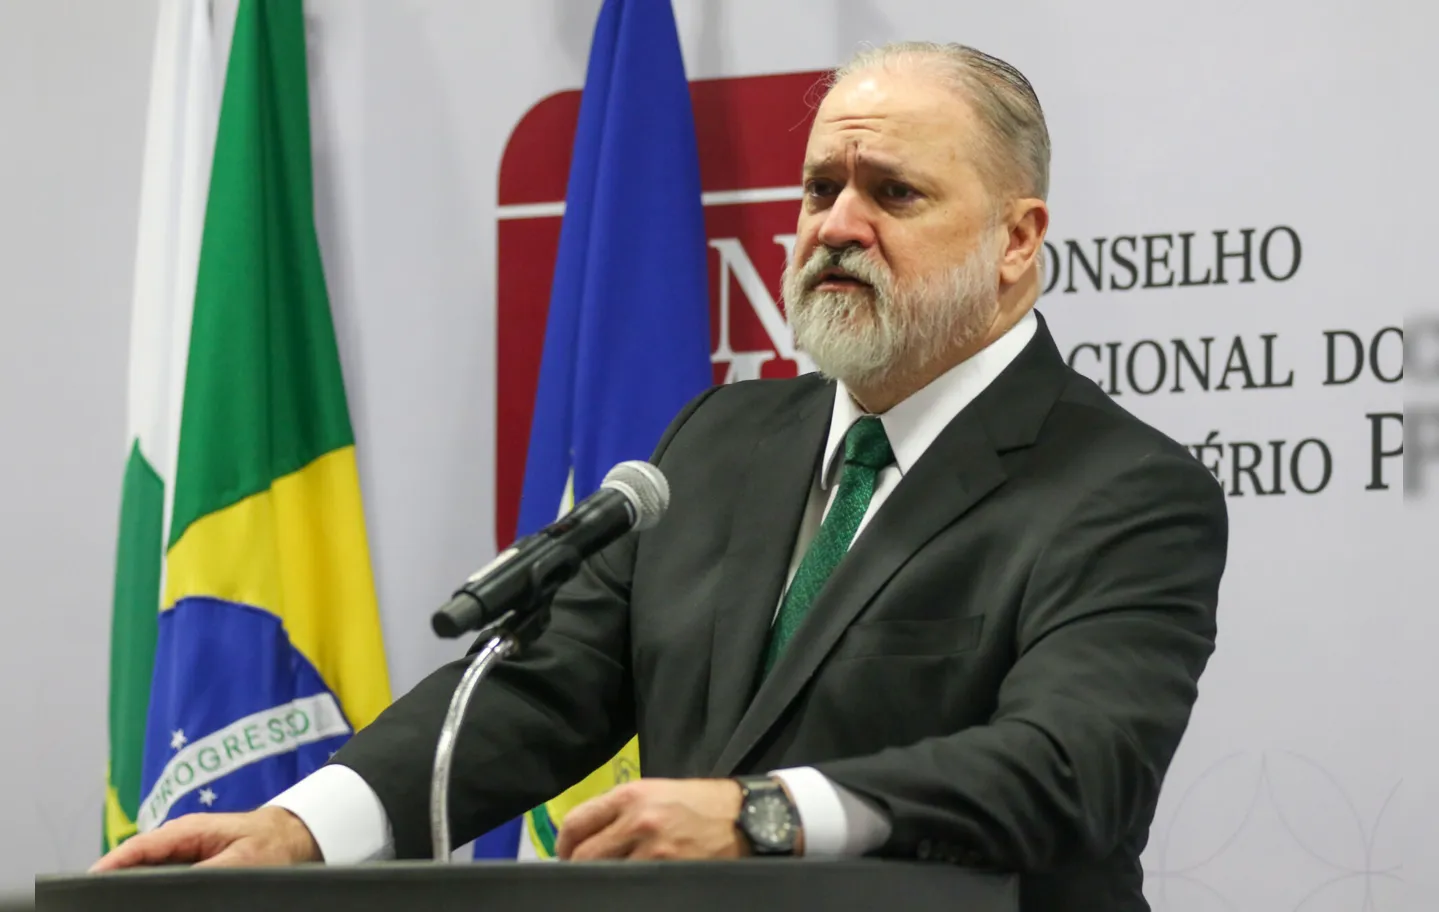 O Conselho Nacional do Ministério Público (CNMP) realiza a última sessão comandada pelo atual procurador-geral da República, Augusto Aras. Ele deixa o cargo após quatro anos à frente da PGR